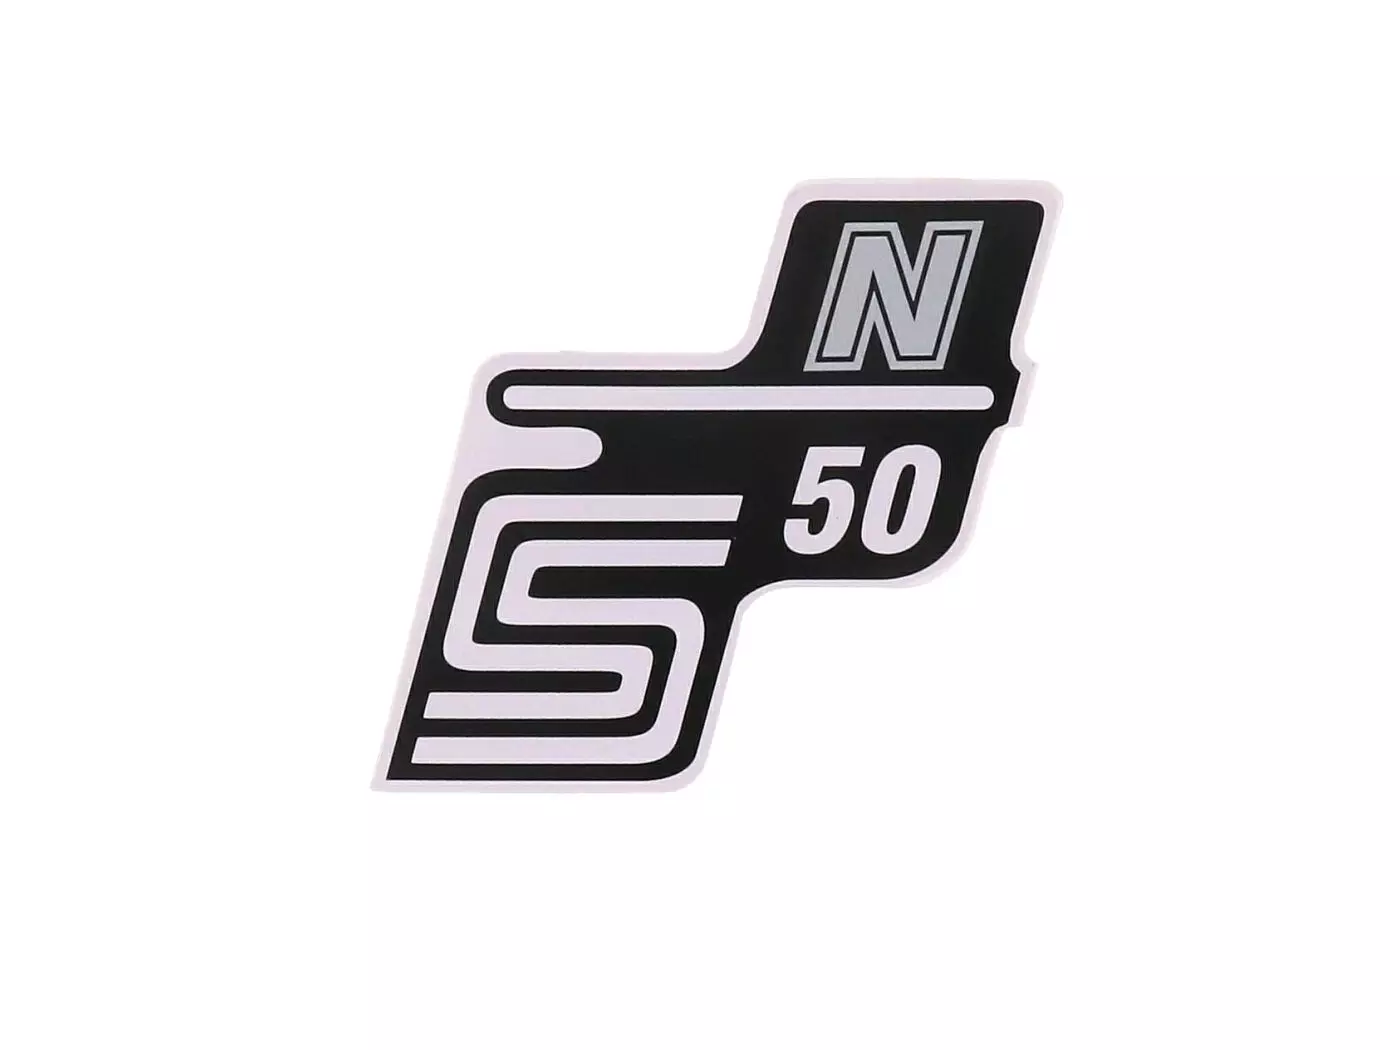 Schriftzug S50 N Folie / Sticker zilver voor Simson S50